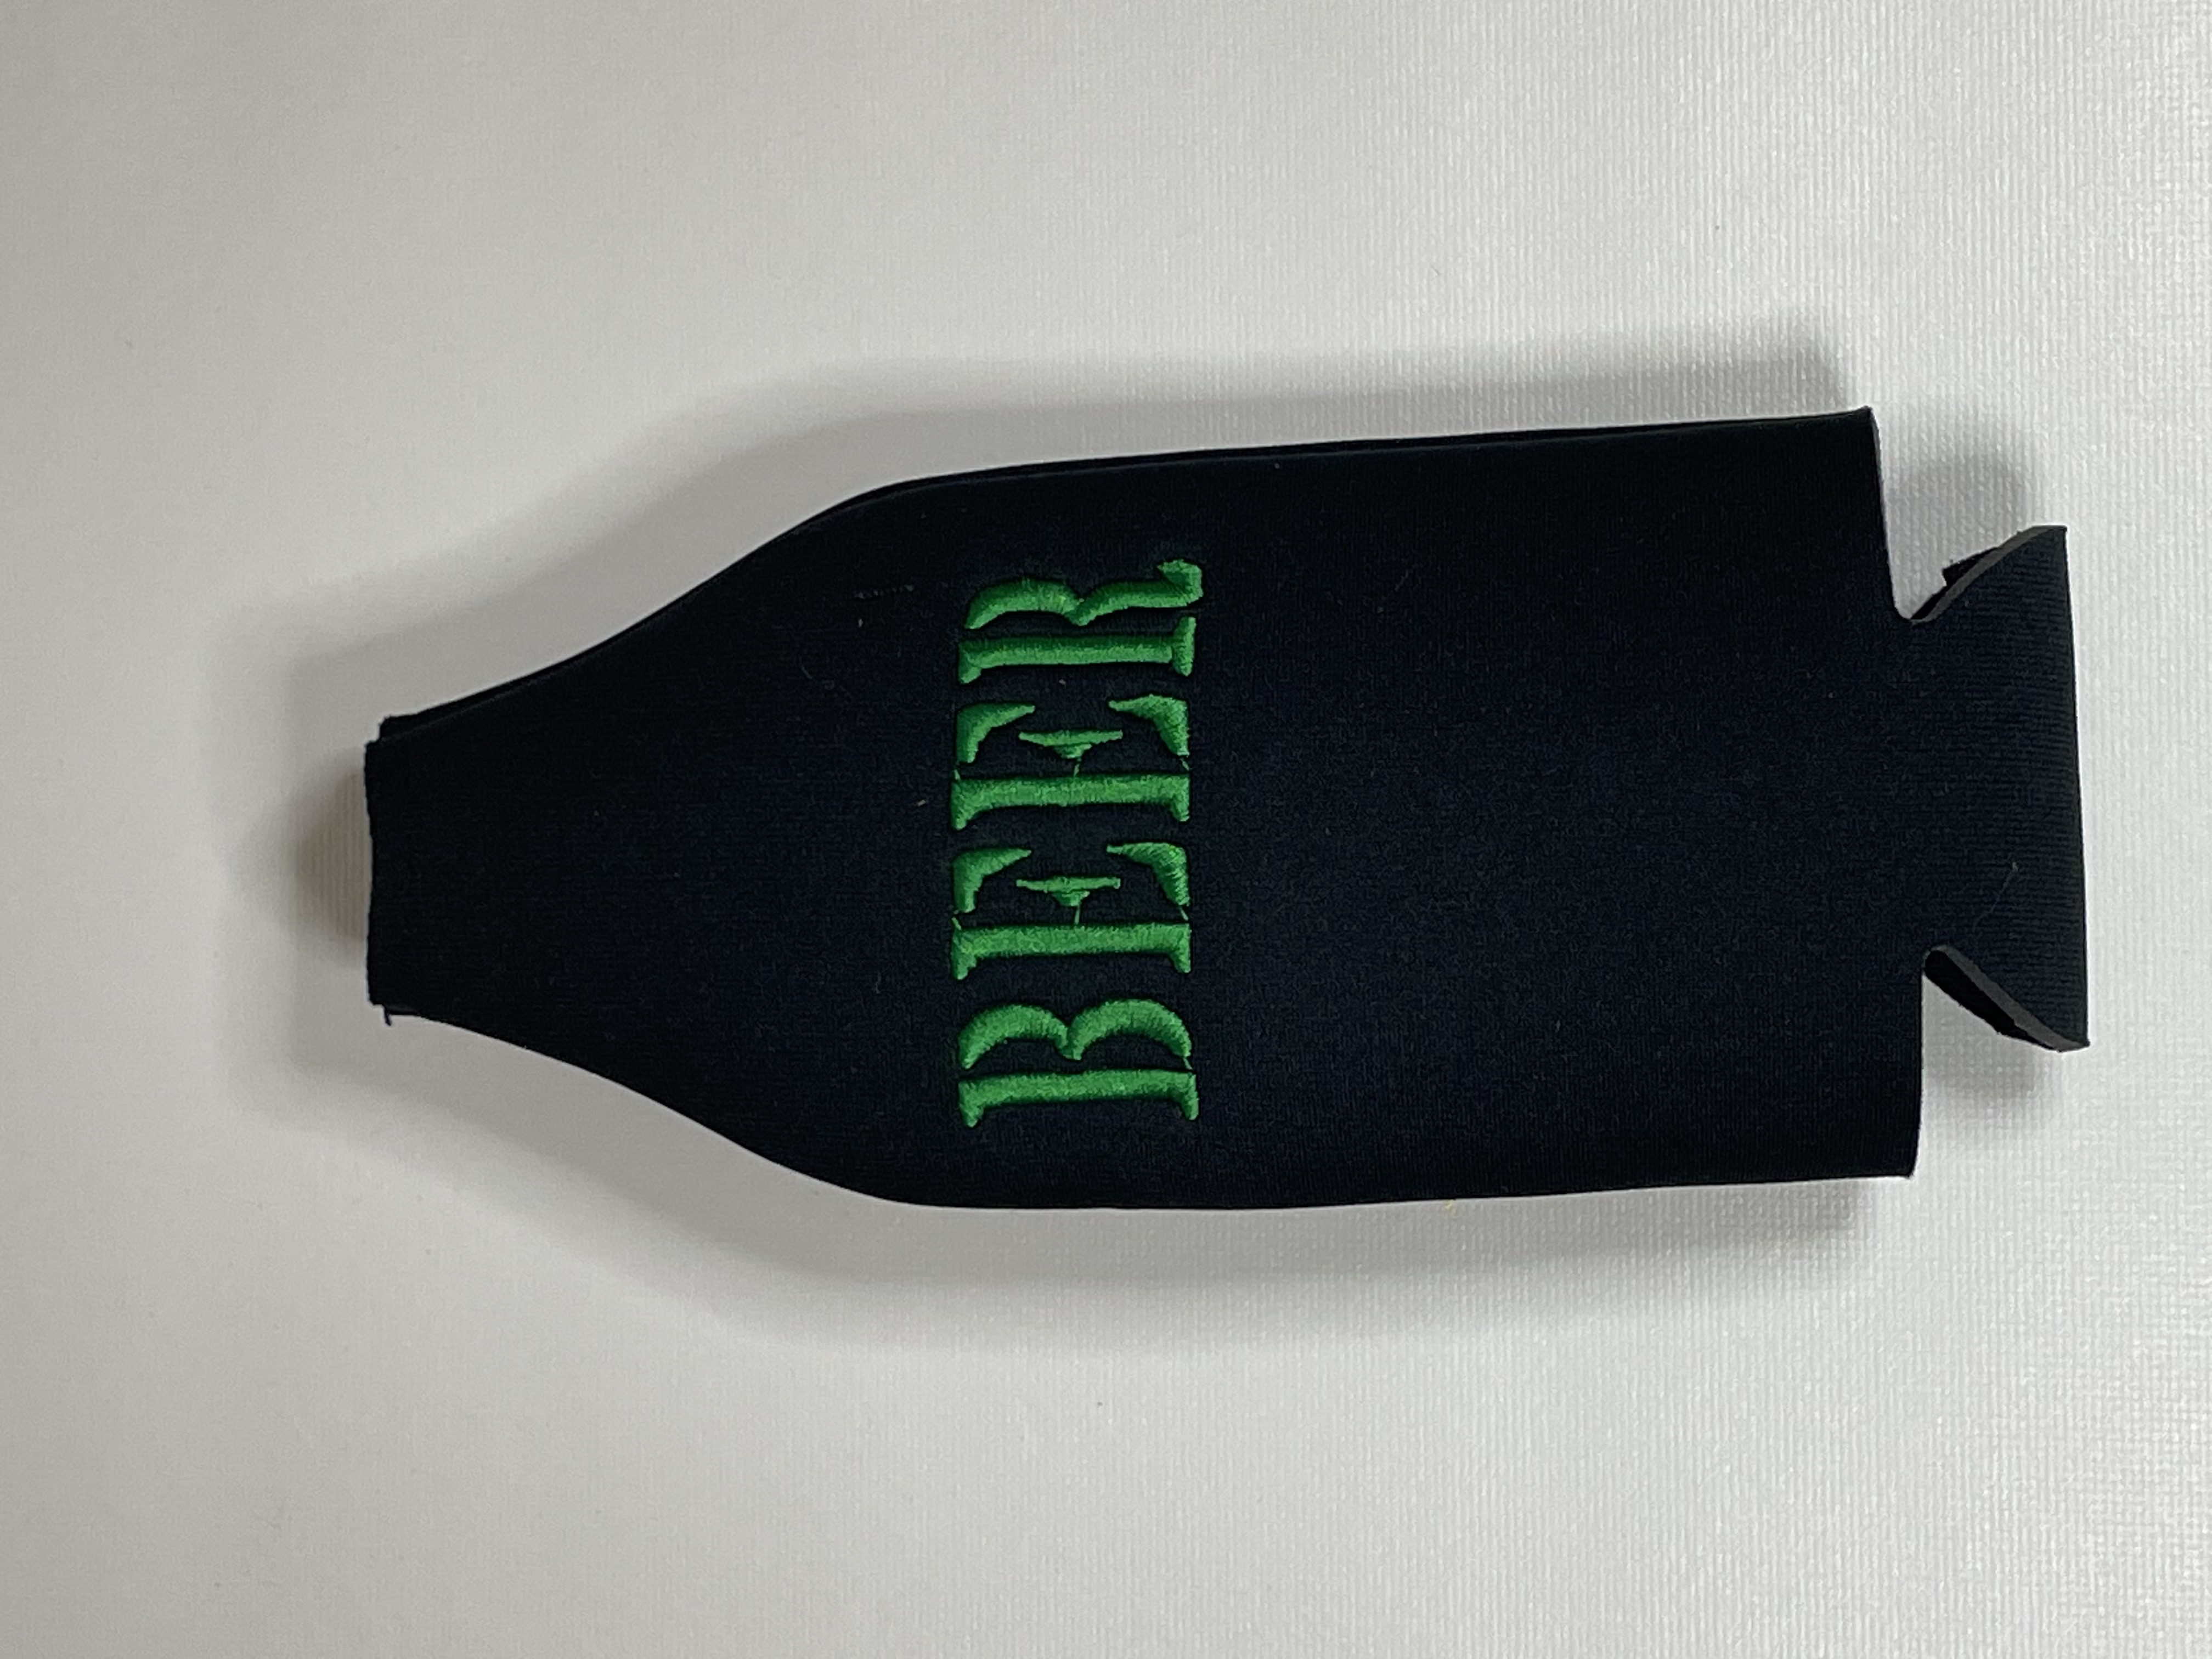 Capa de cerveja BEER em verde